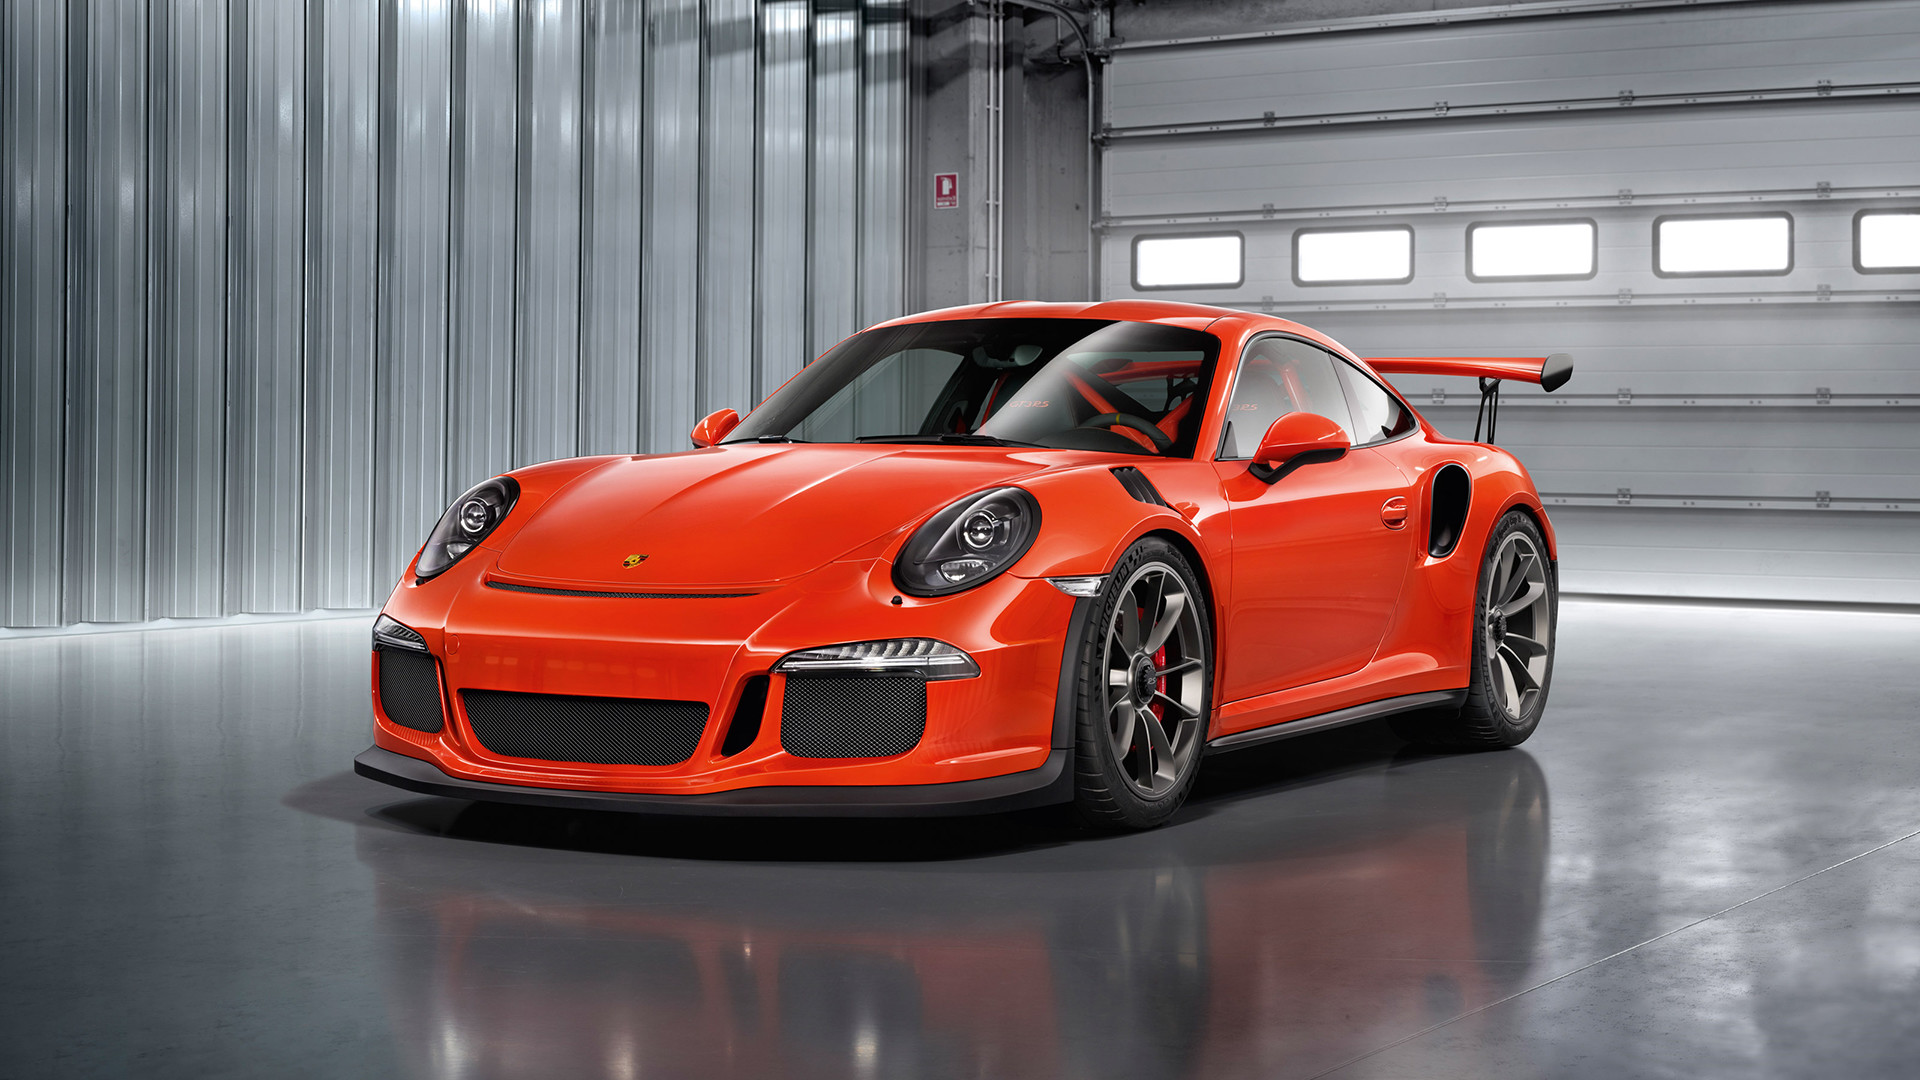 Porsche 911 Gt3 Rs Wallpaper ·① WallpaperTag